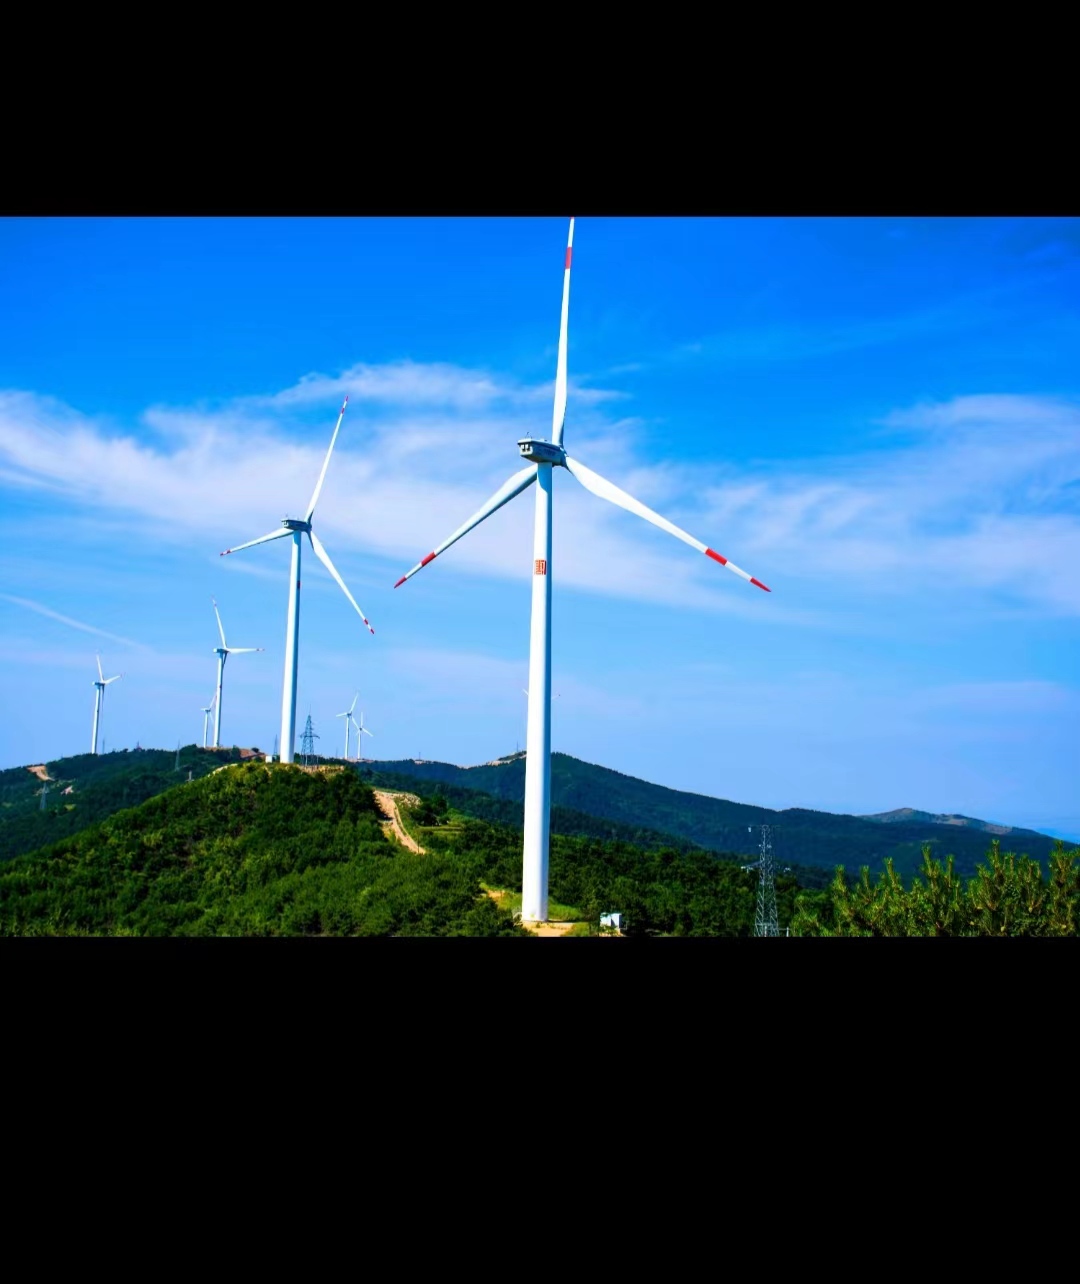 图片素材 : 景观, 天空, 风车, 蓝色, 风力发电机, 风能, 生态, 绿色能源, 可替代能源, 当前, 云彩, 磨, 风电场, 瑞士, 再生能源, 螺旋桨, 回收, 风公园, 环保 ...